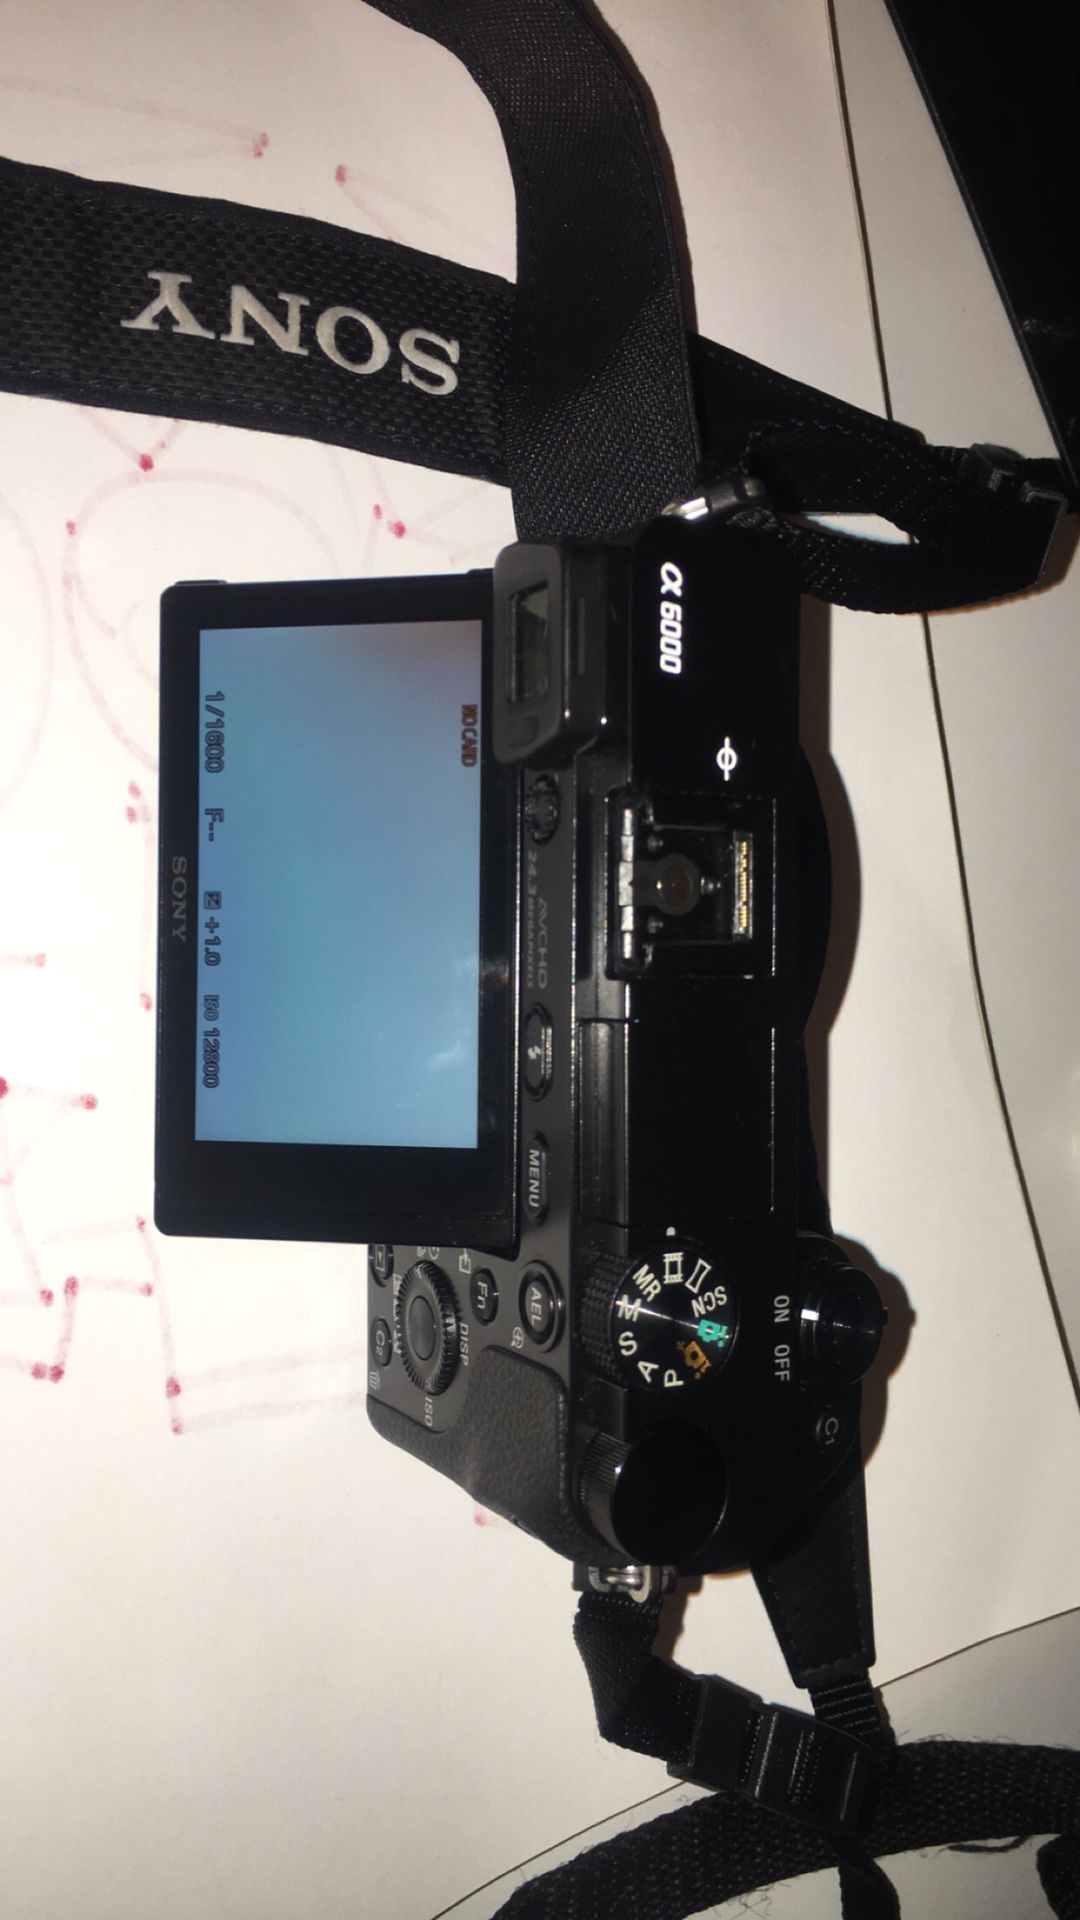 Sony A6000 camera